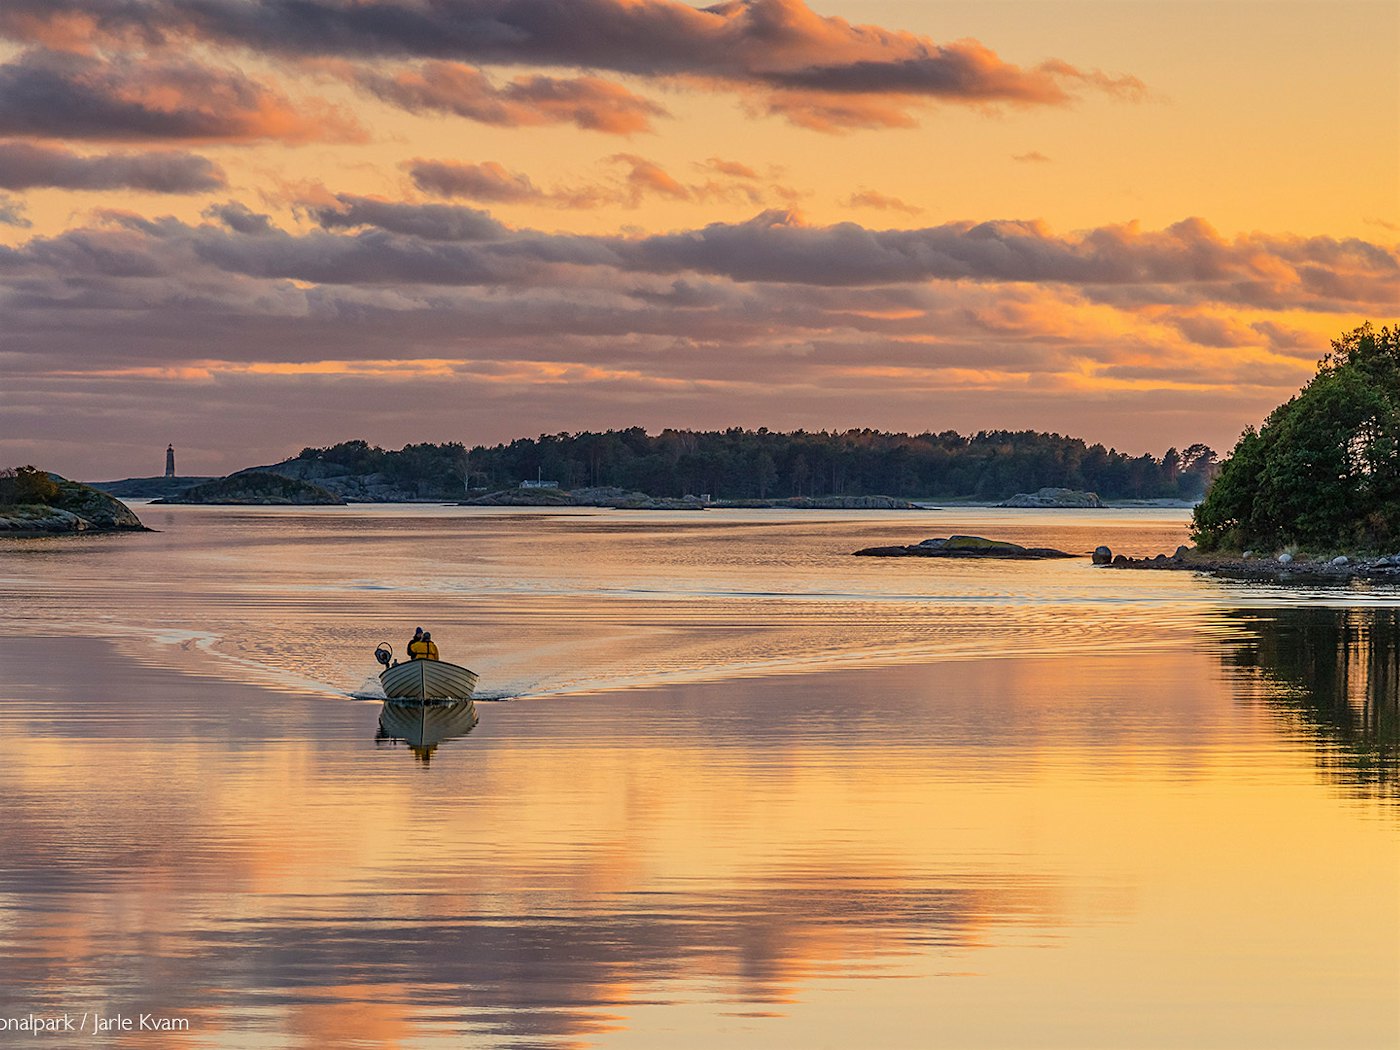 Båt kjører bortover blikkstille vann med dramatisk solnedgang som reflekteres i vannet. Foto